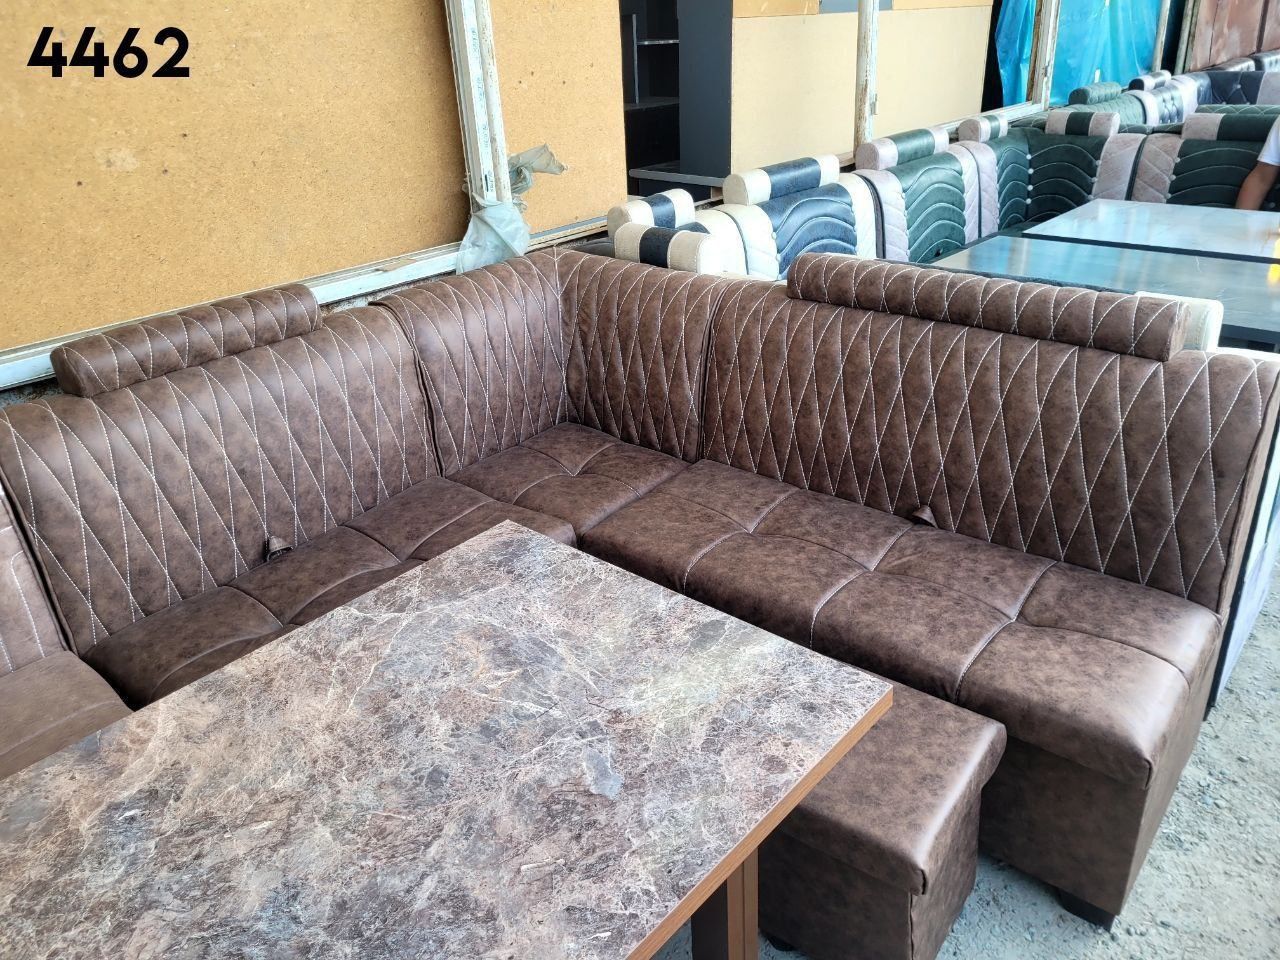 Мебель на заказ любую в Ташкенте любую слжожности мяхкие и корпусной